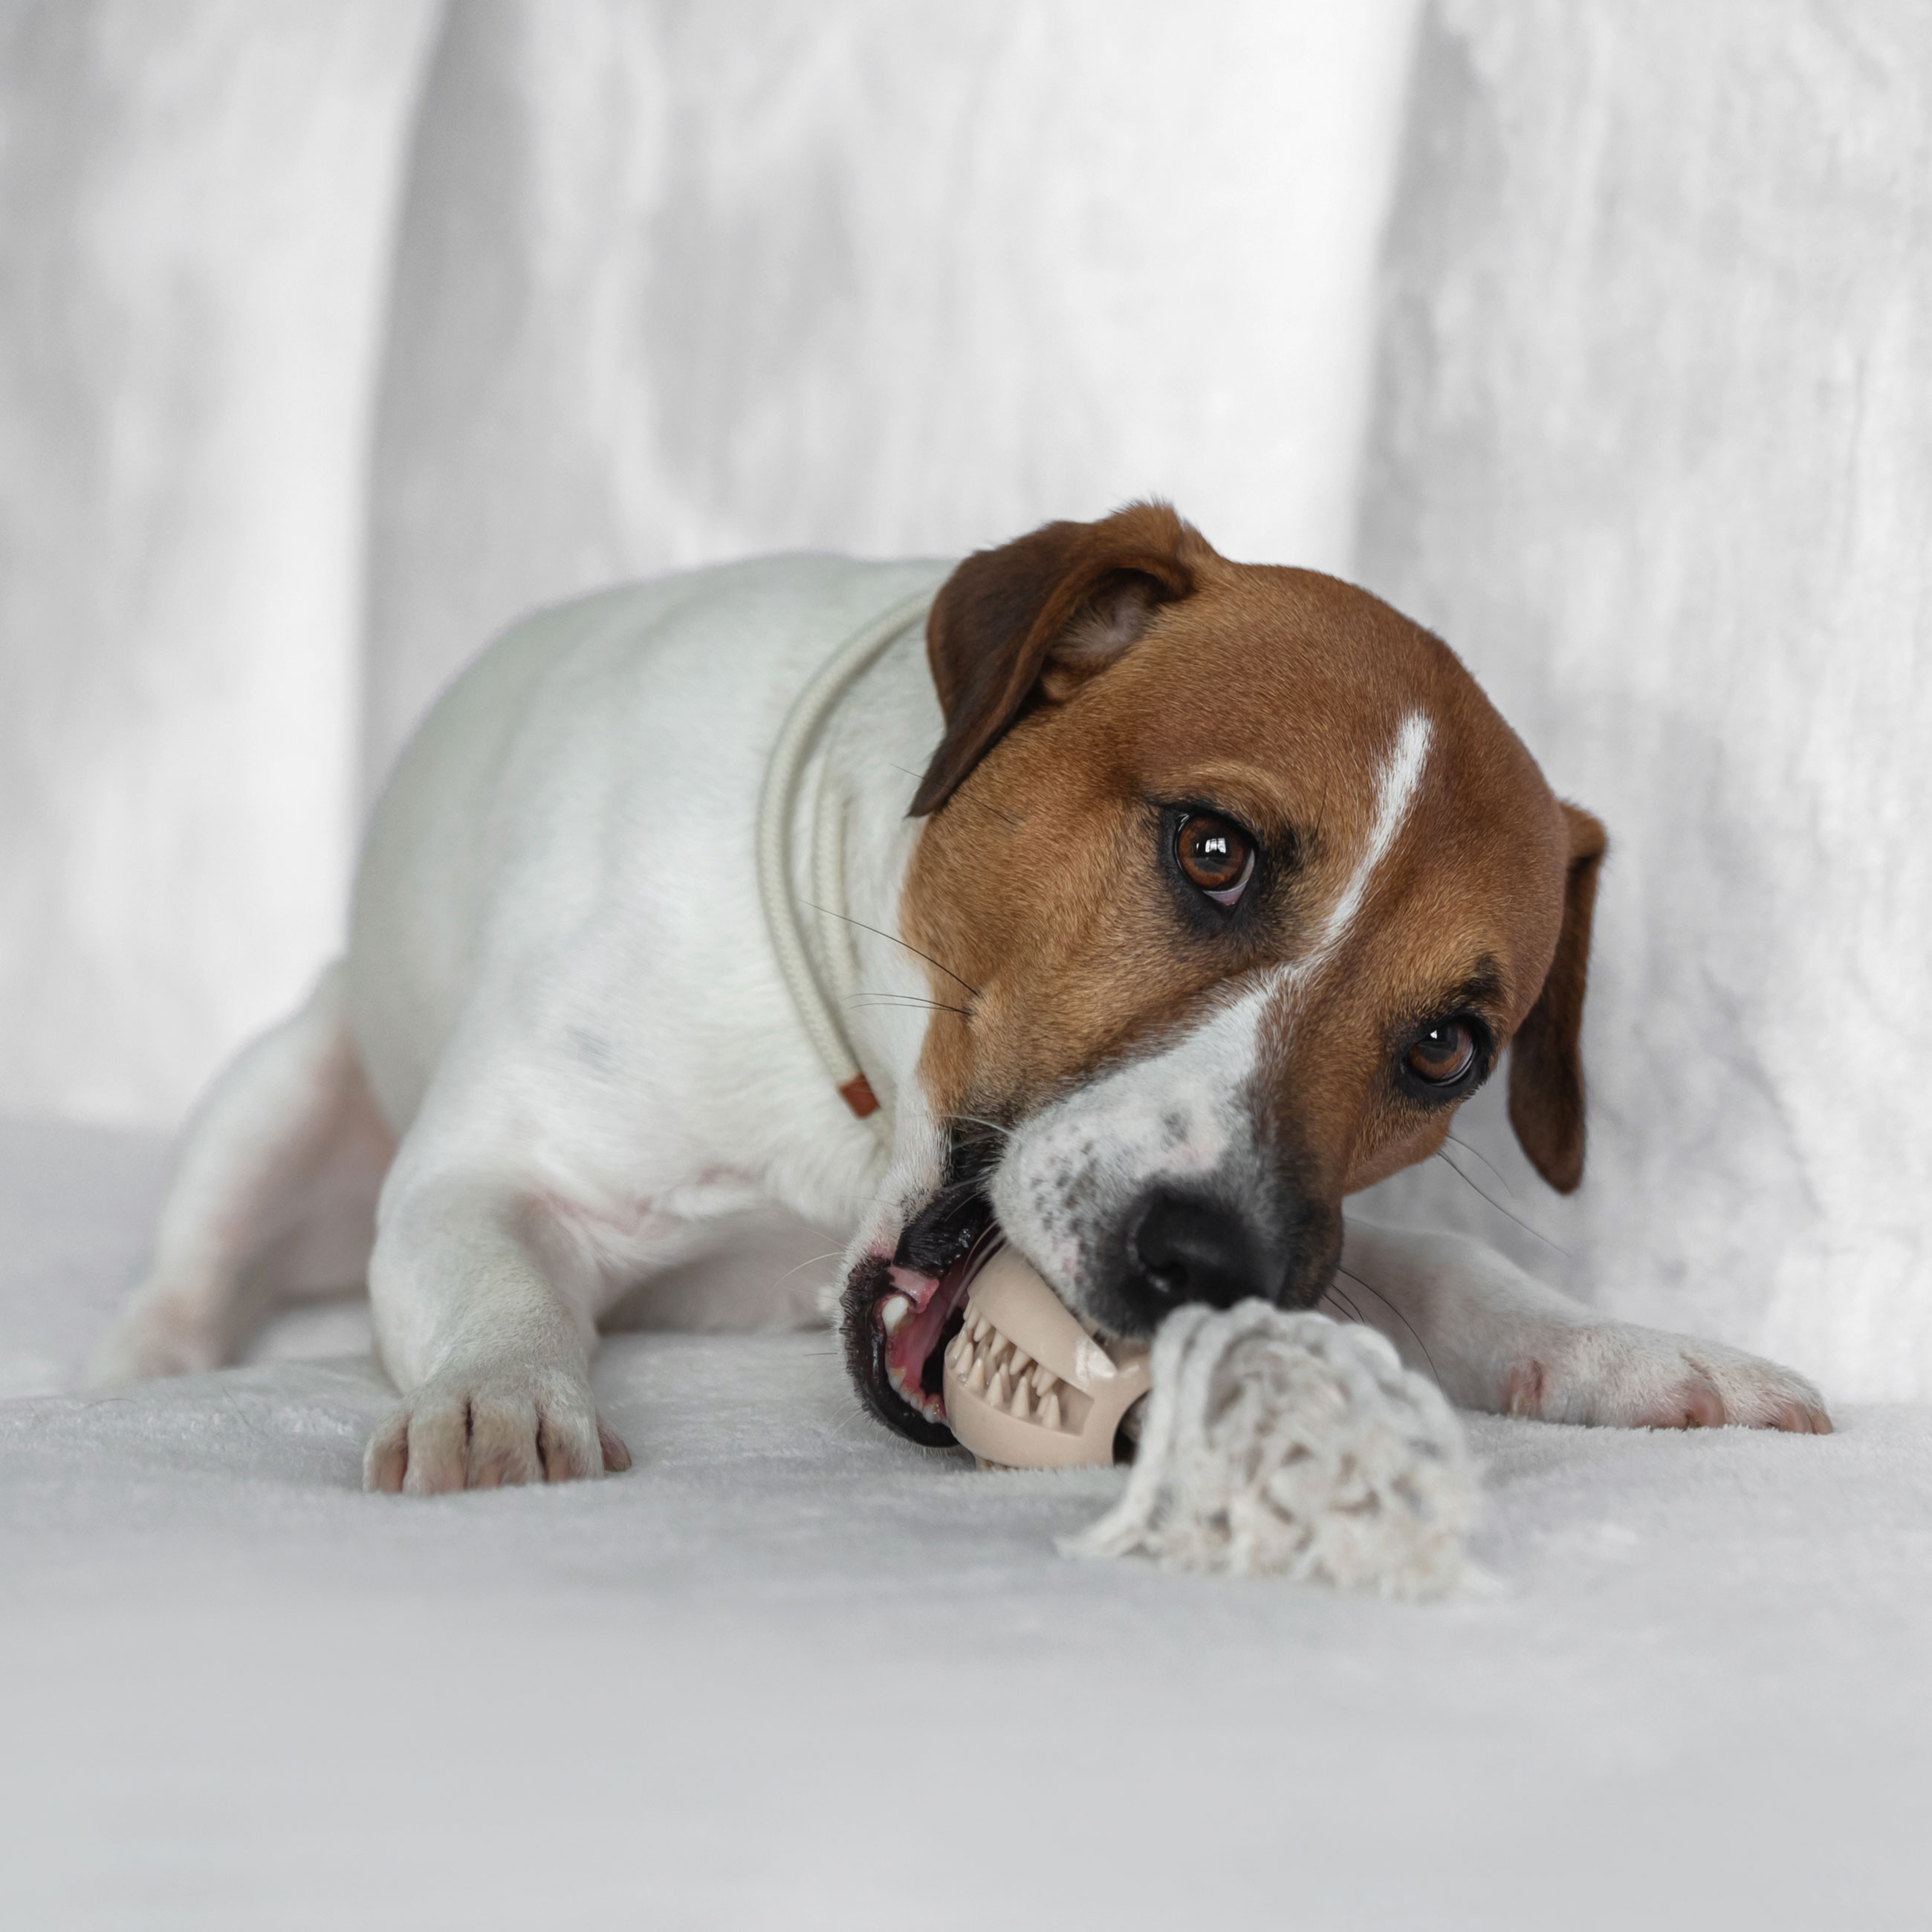 Игрушка для собак, 28 см, резина/хлопок, бежевая, Шар на канате, Playful pet изображение № 2